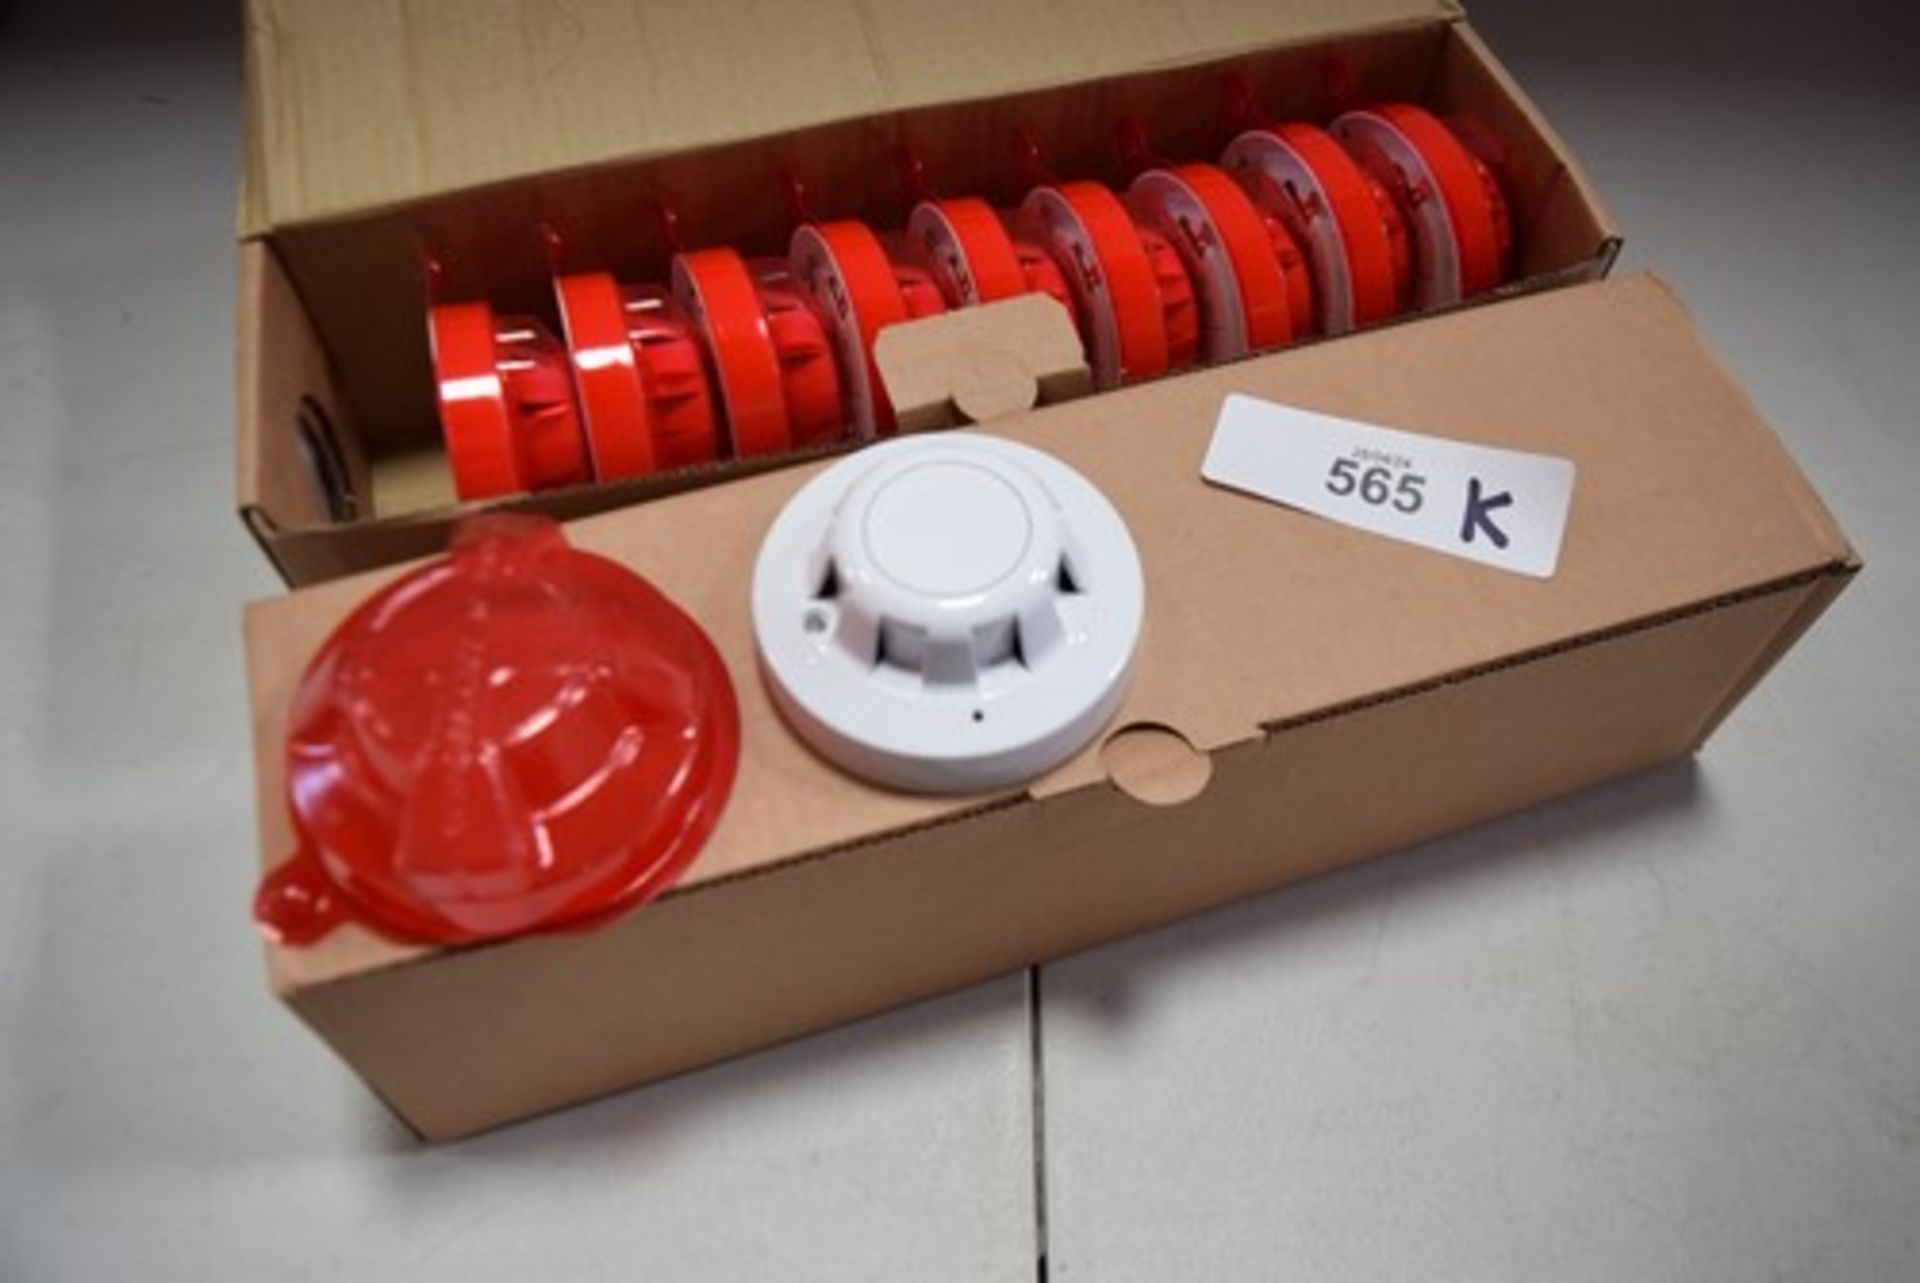 20 x Apollo optical smoke detectors, item No: XP95 - new in box (GS30A)